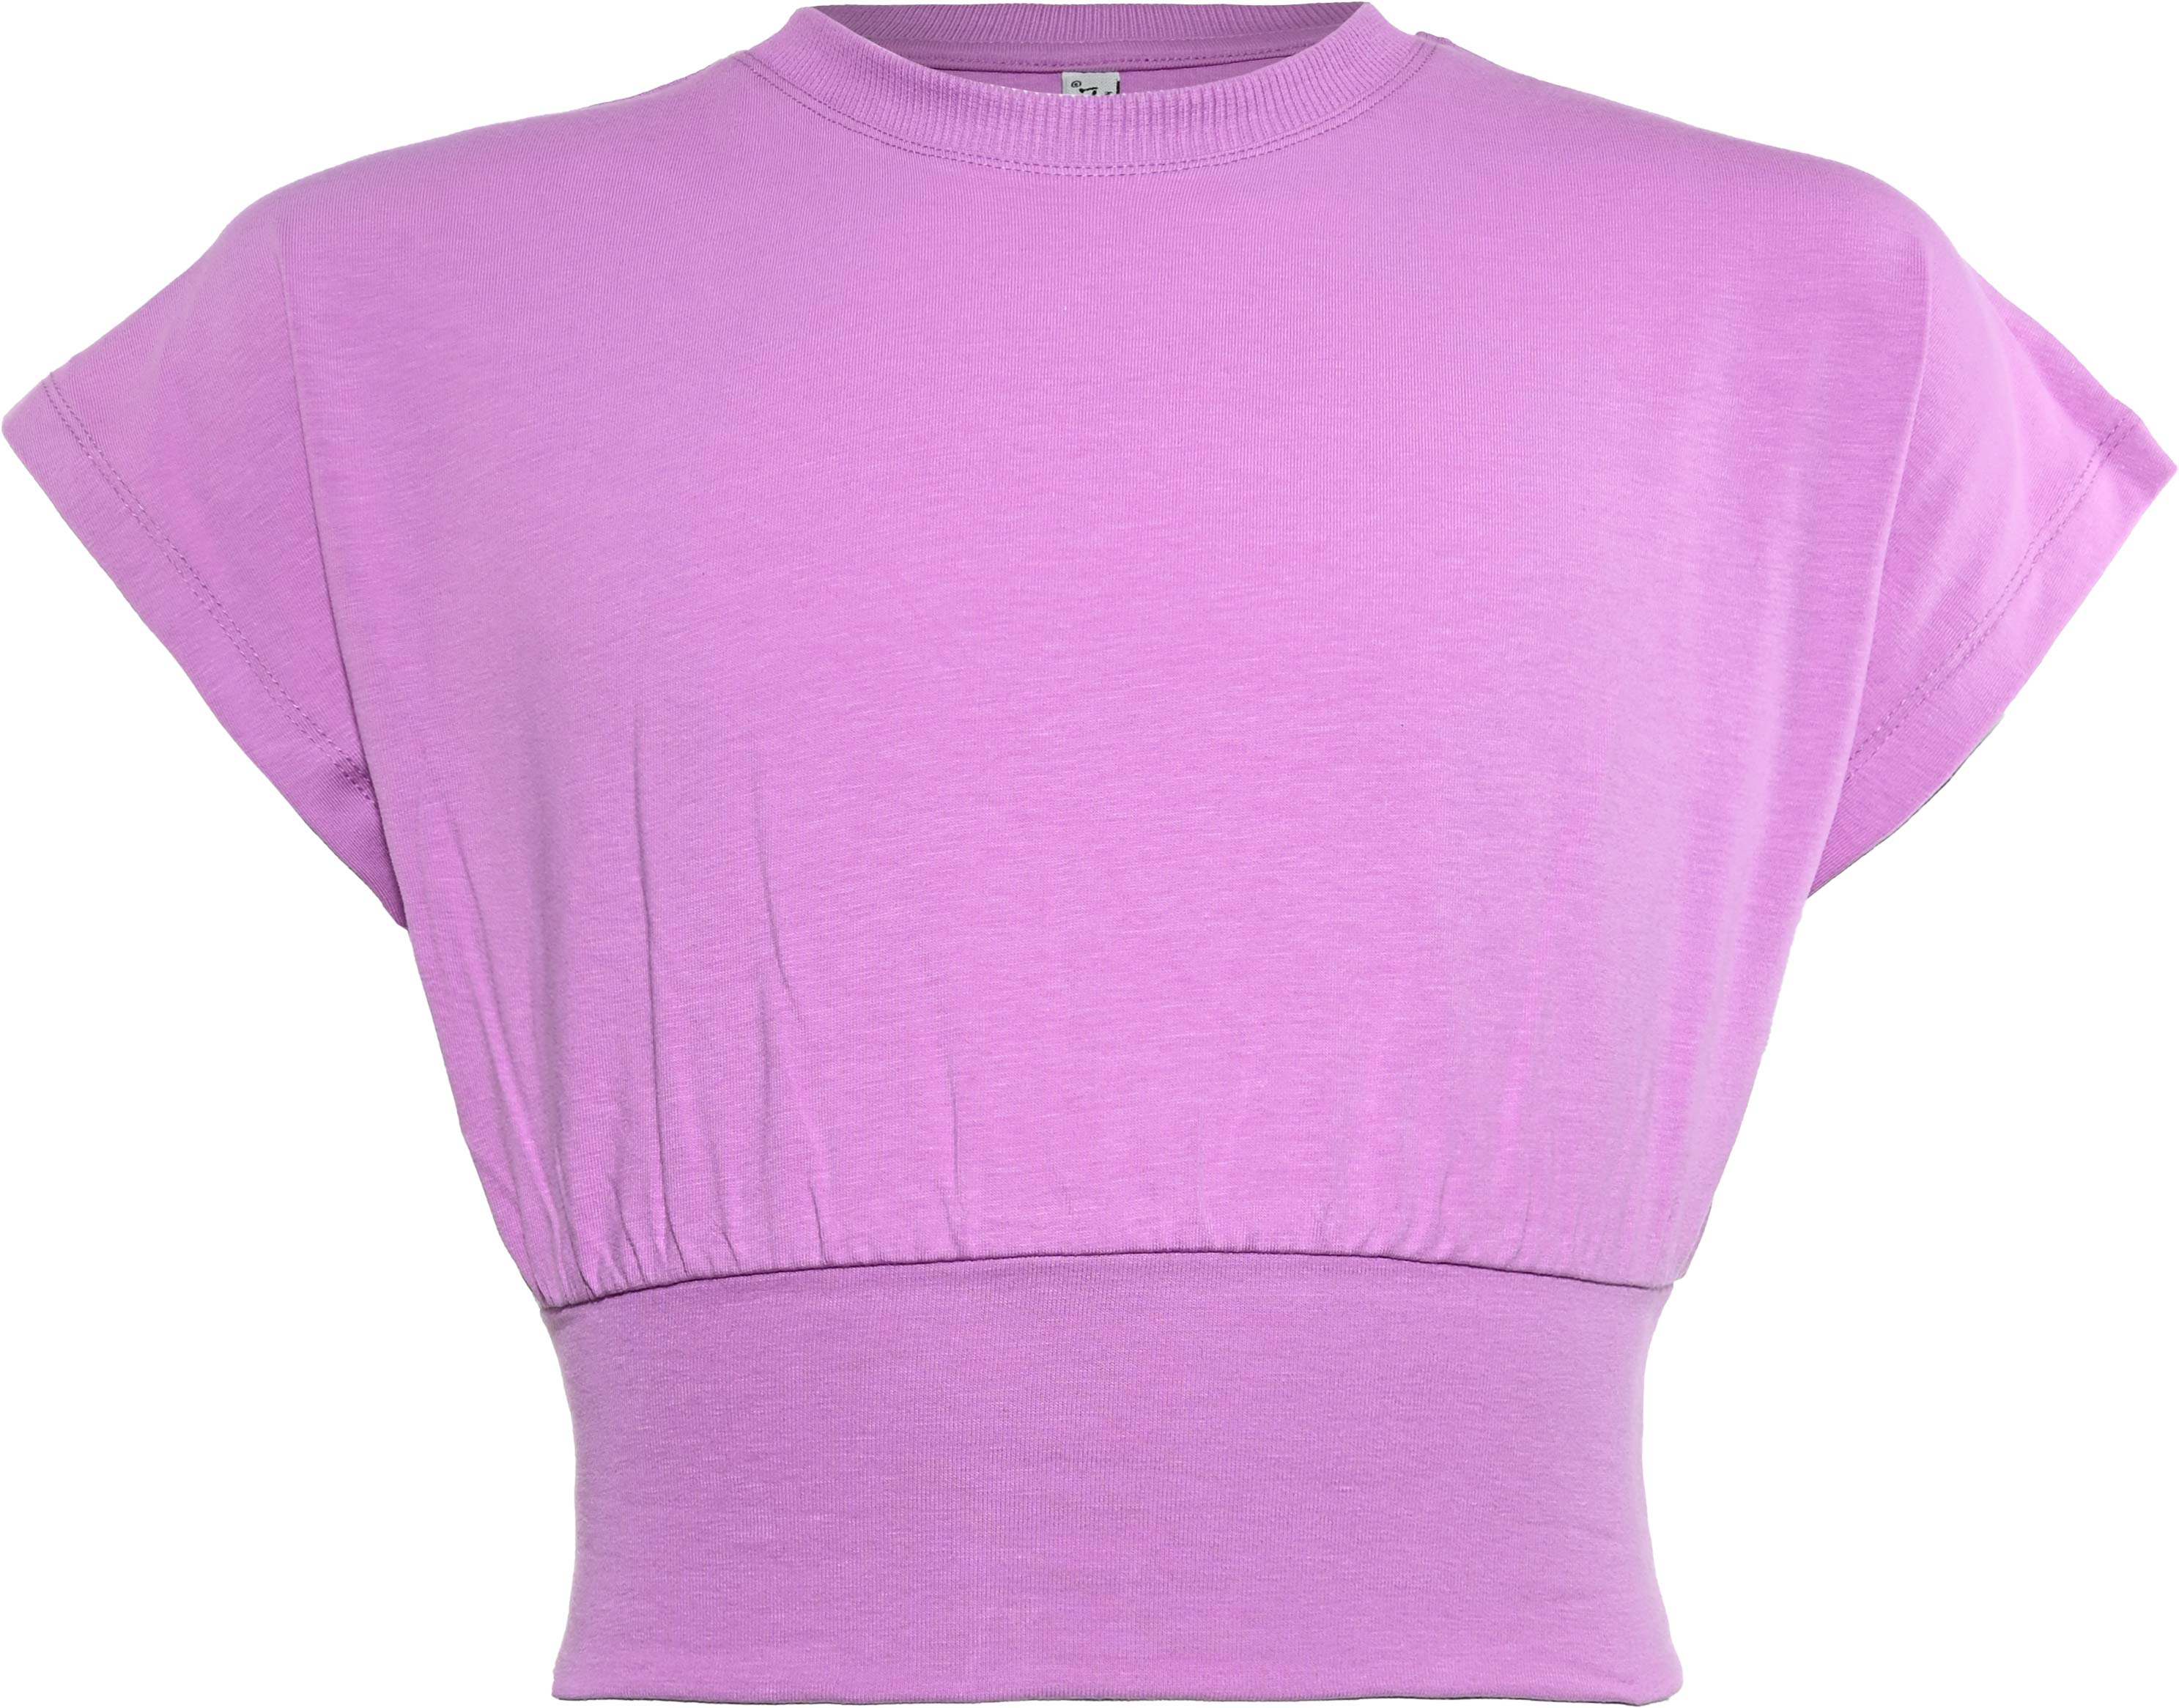 5955-Girls Boxy T-Shirt -Peaceful